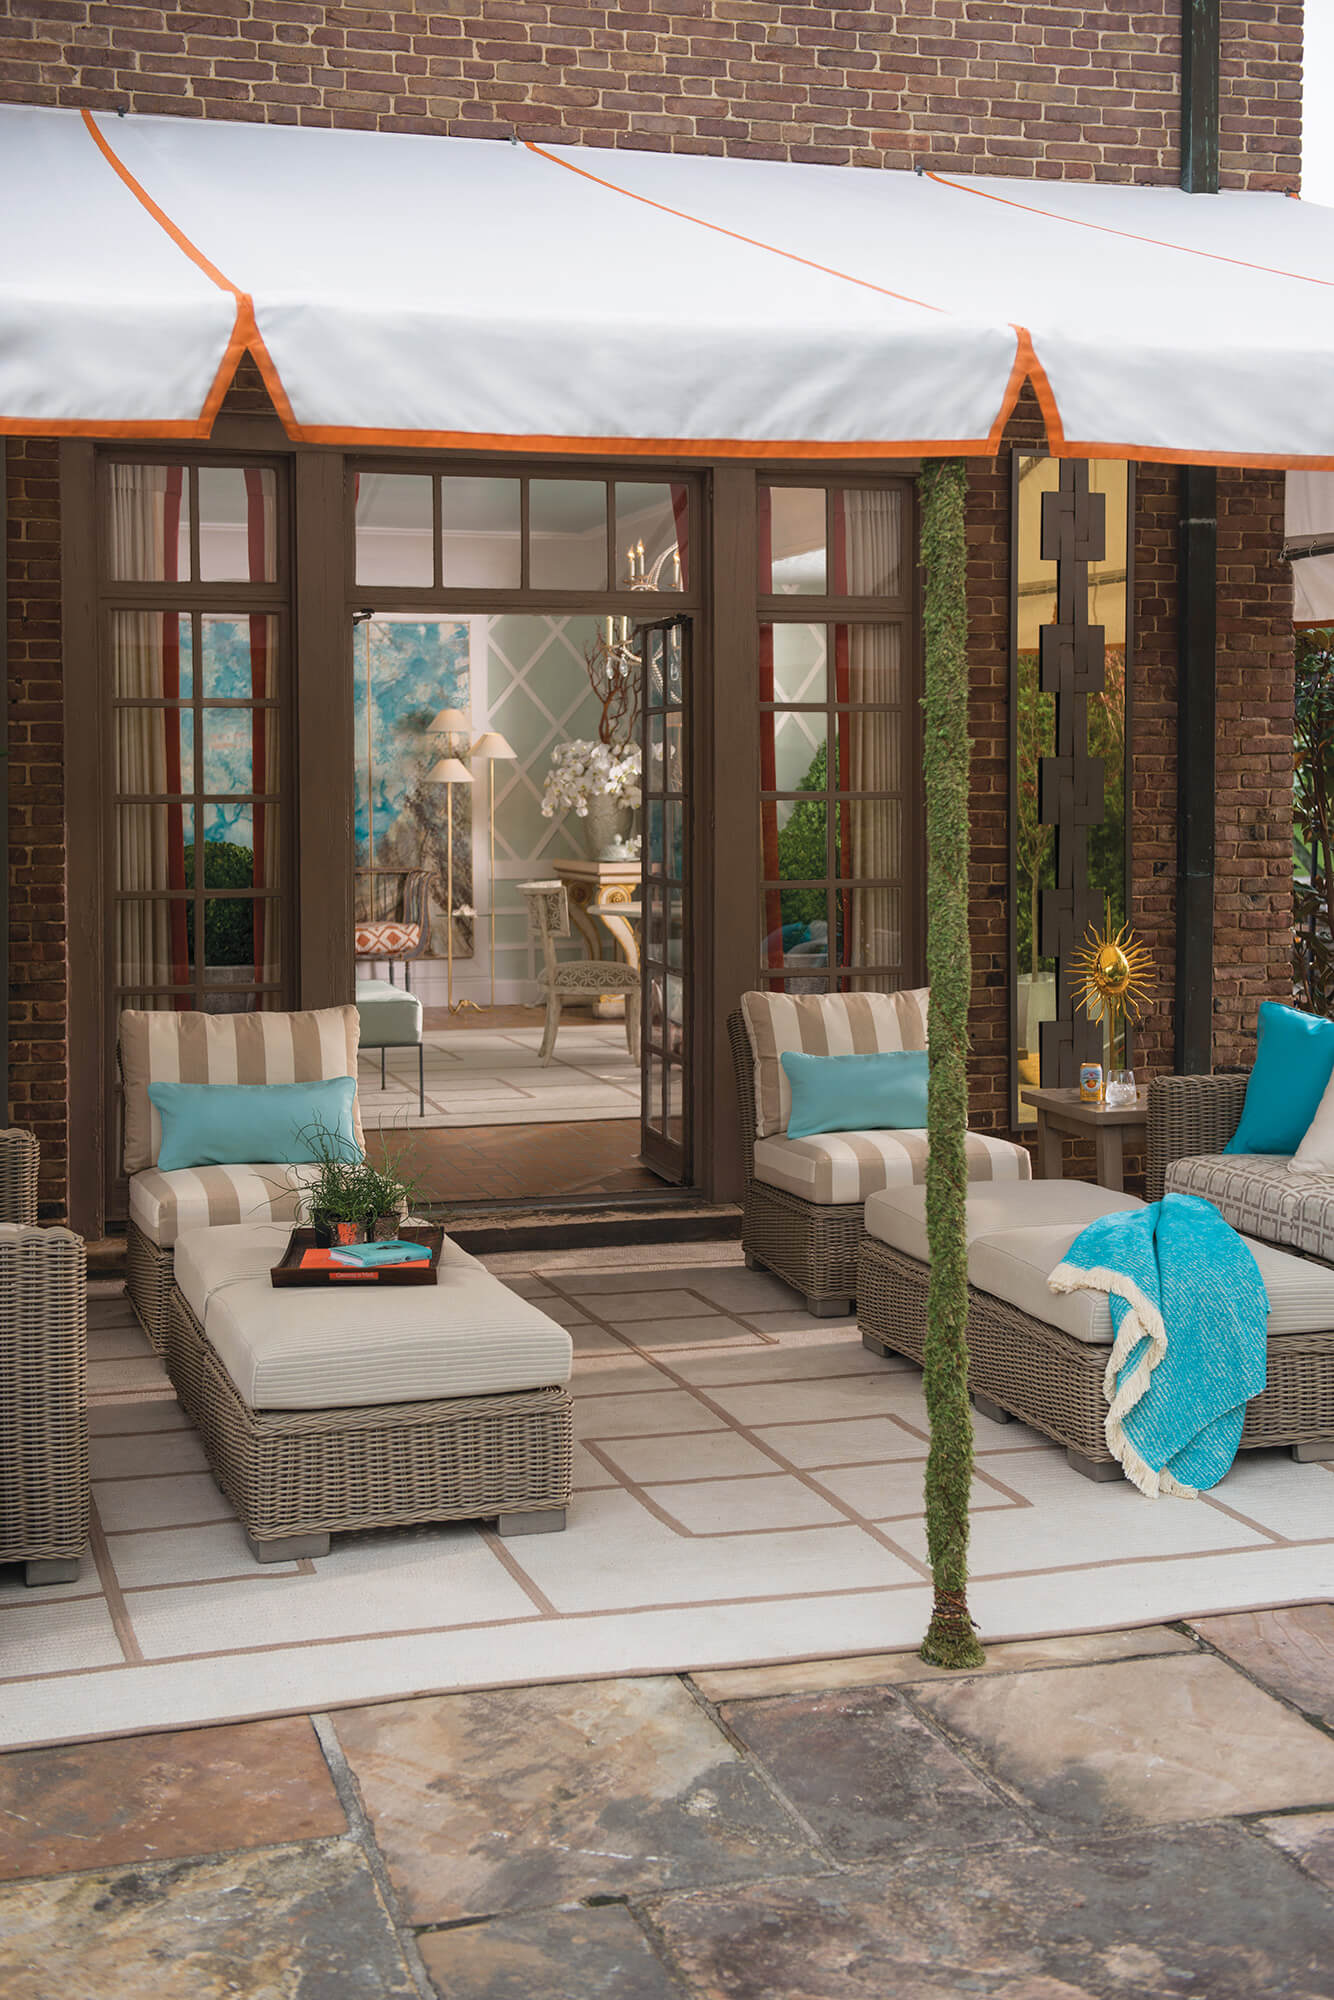 Un toldo blanco de marco fijo con borde naranja da sombra al área para sentarse de un patio en el exterior